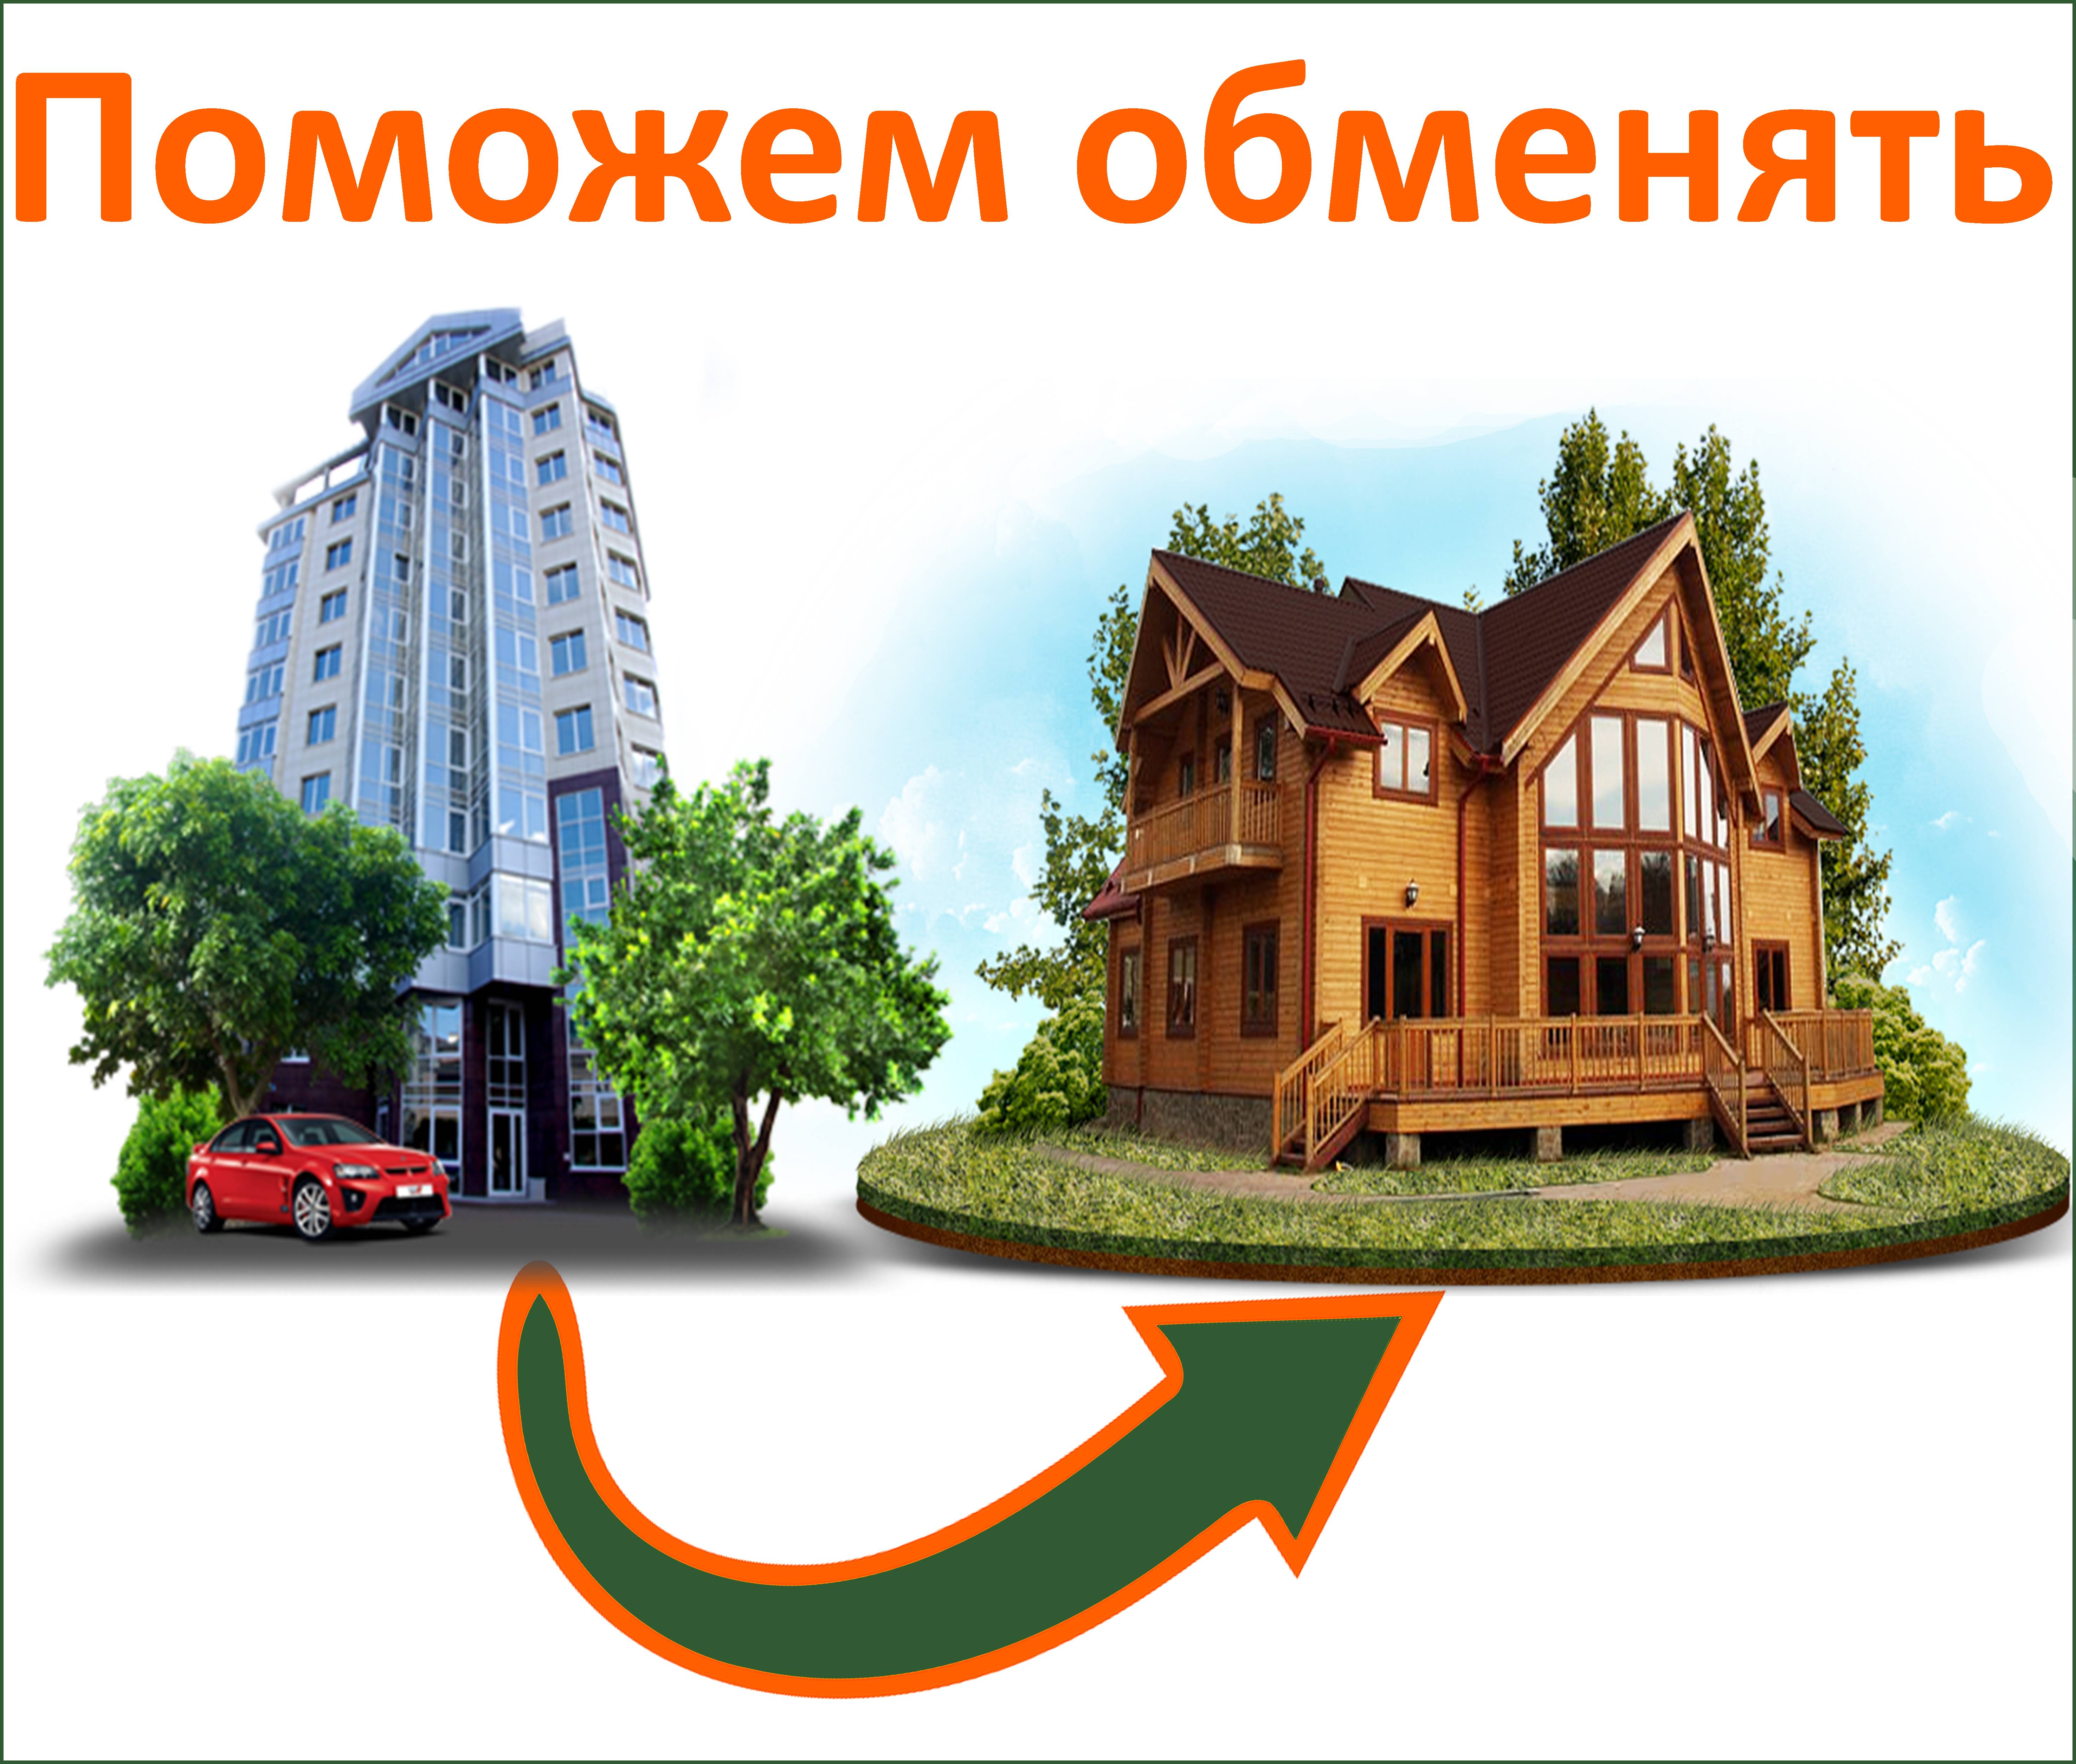 Что лучше дом или квартира? плюсы и минусы городской и загородной недвижимости - строй-специалист.ру